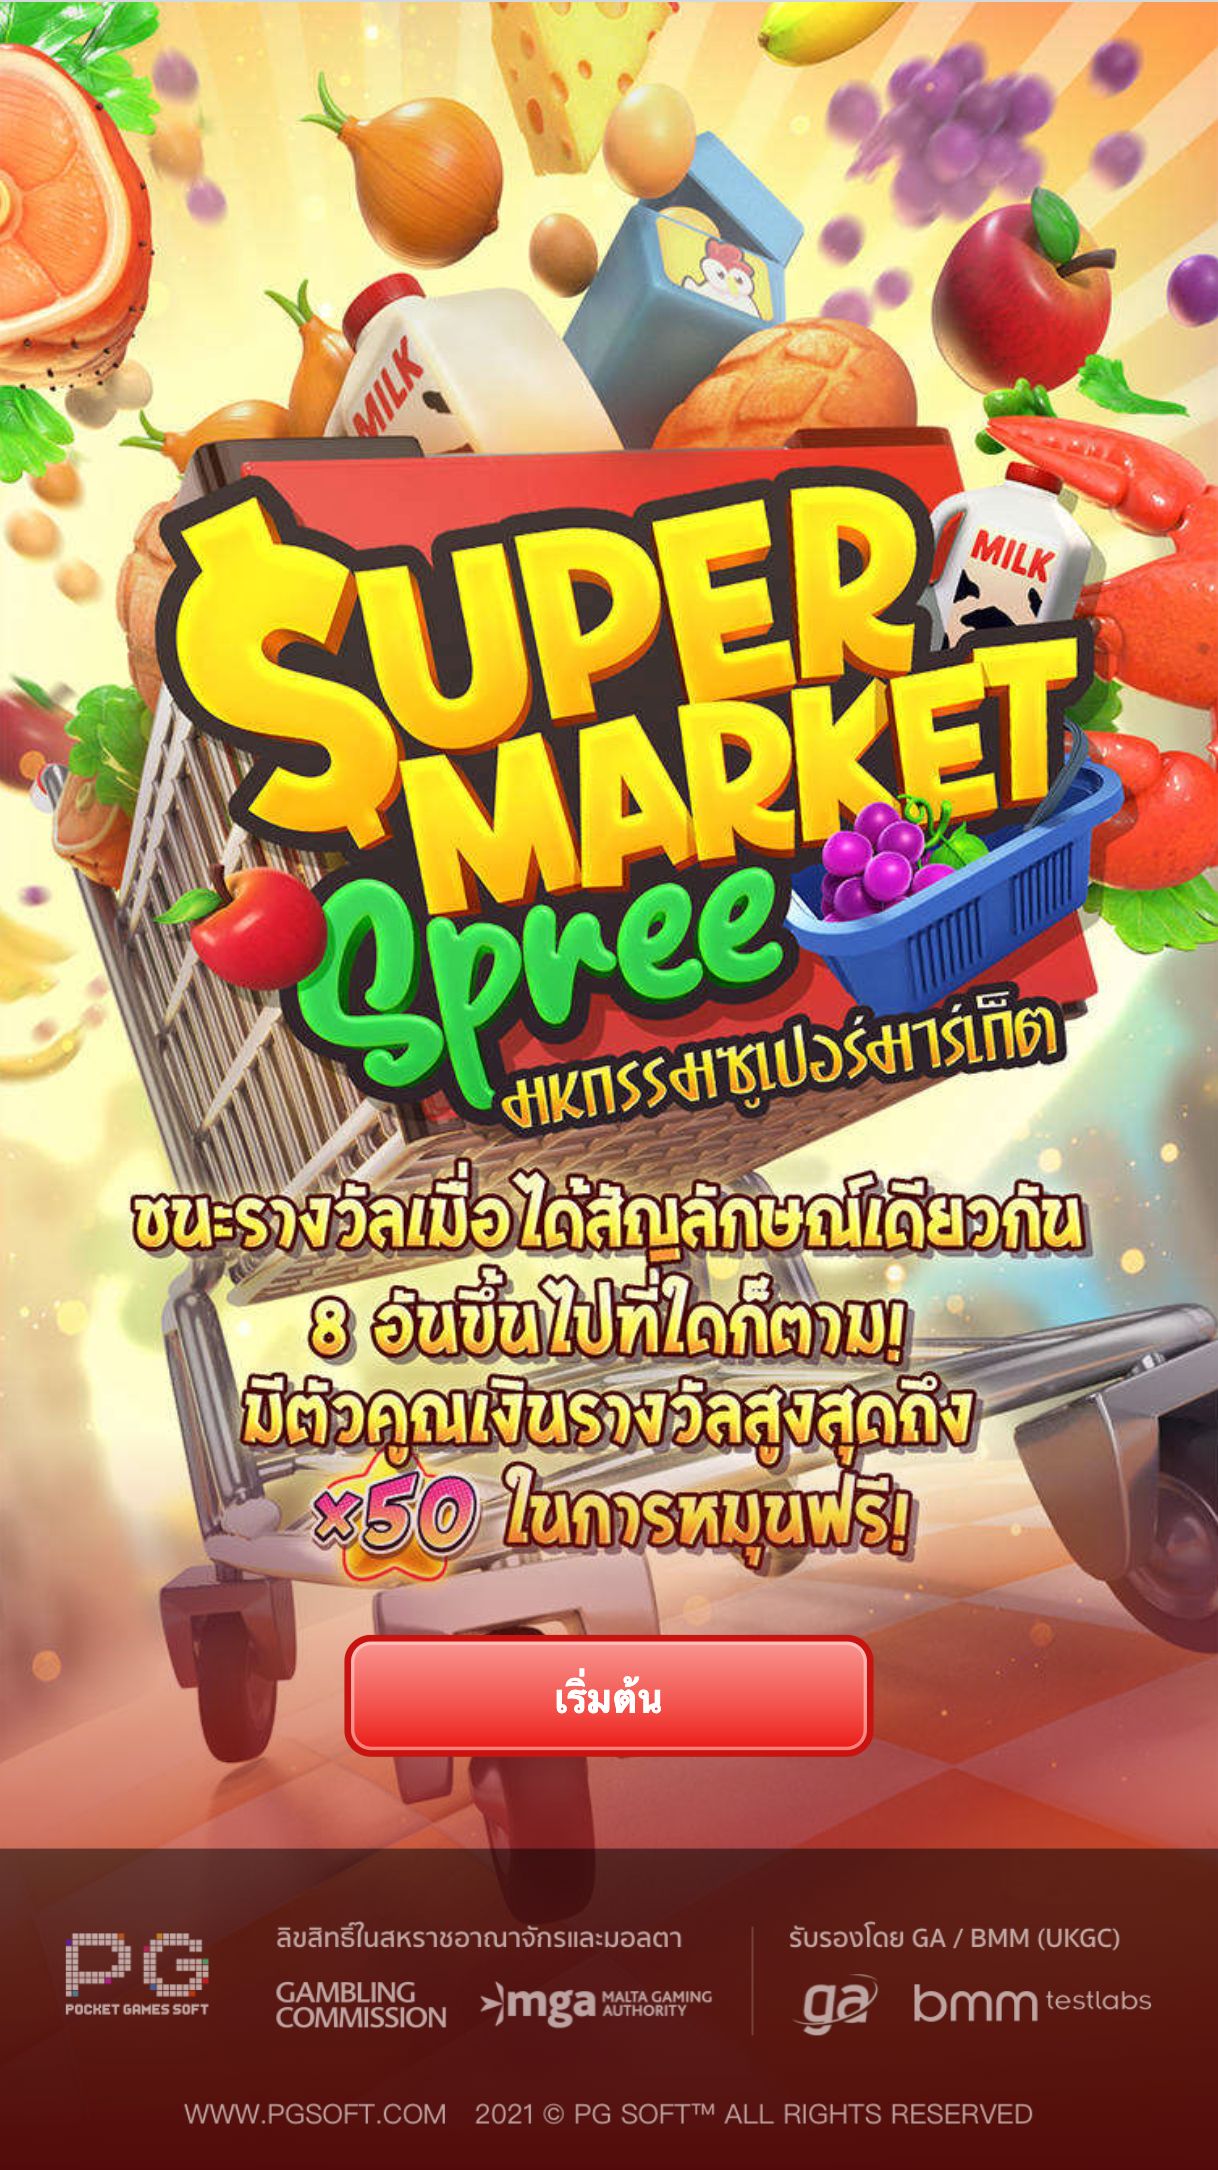 Super Market Spree